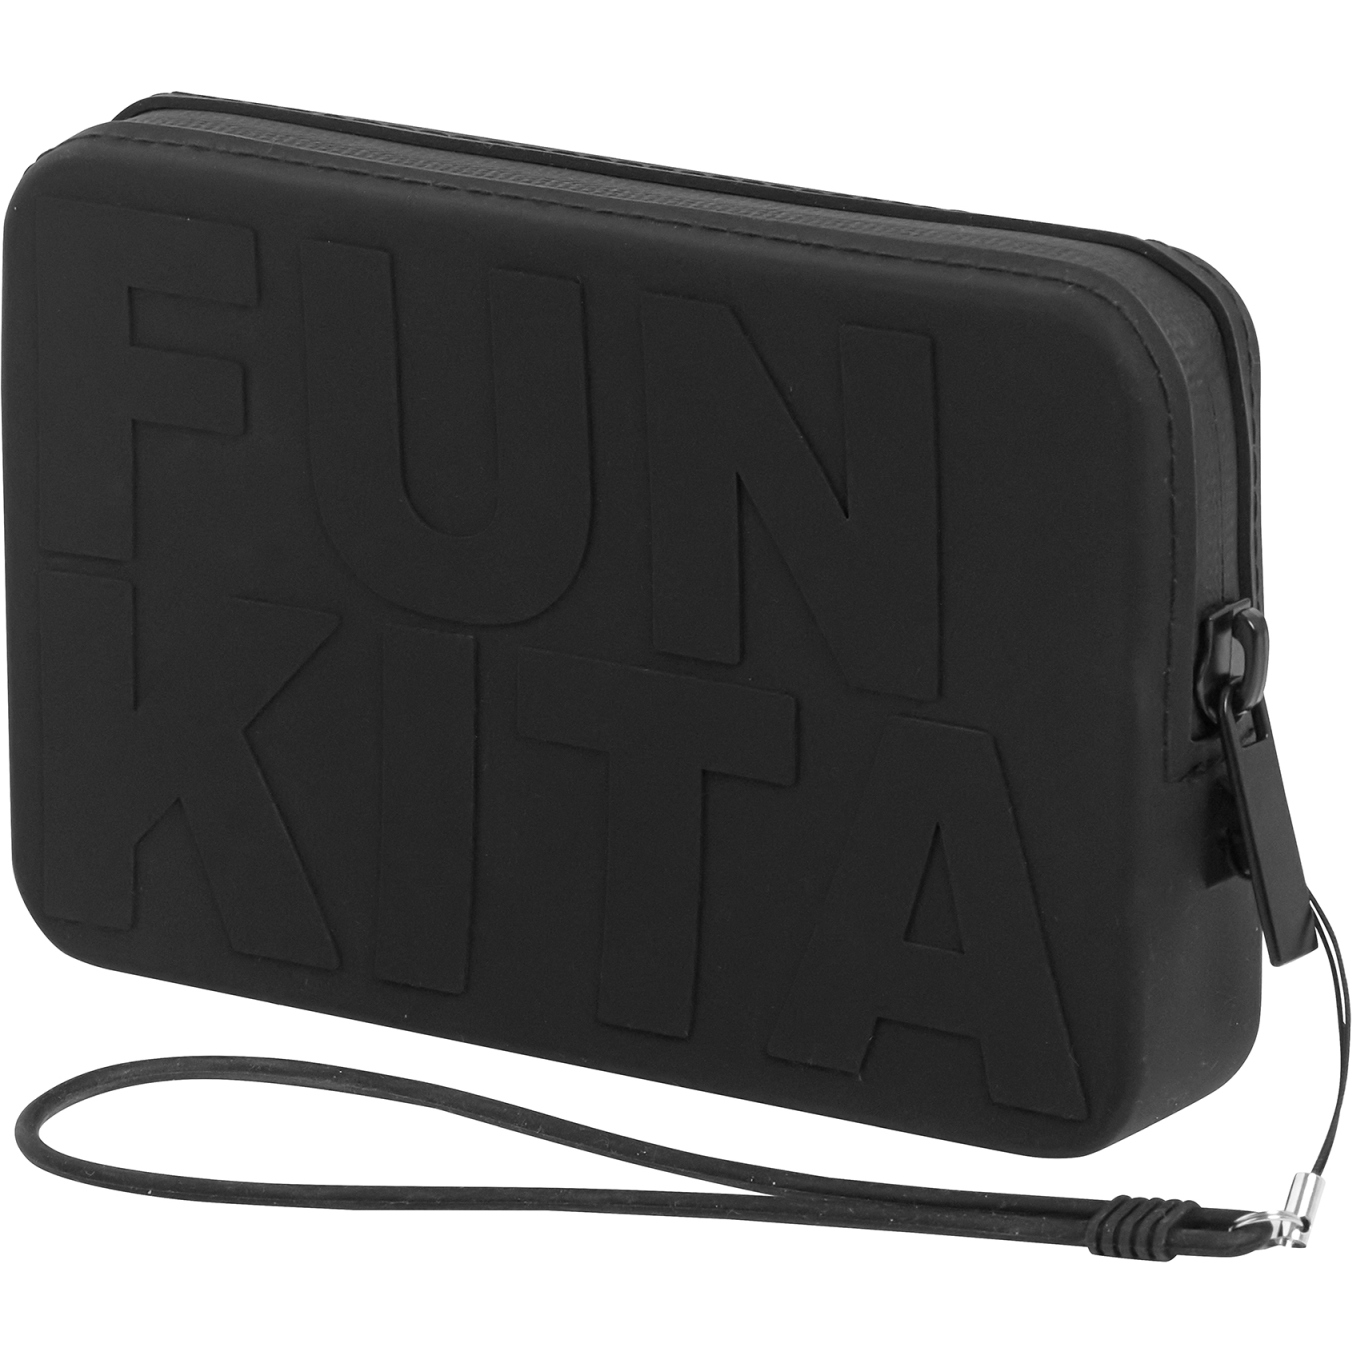 Produktbild von Funkita Catch Up Clutch Smartphone-Tasche - Wetta Preta